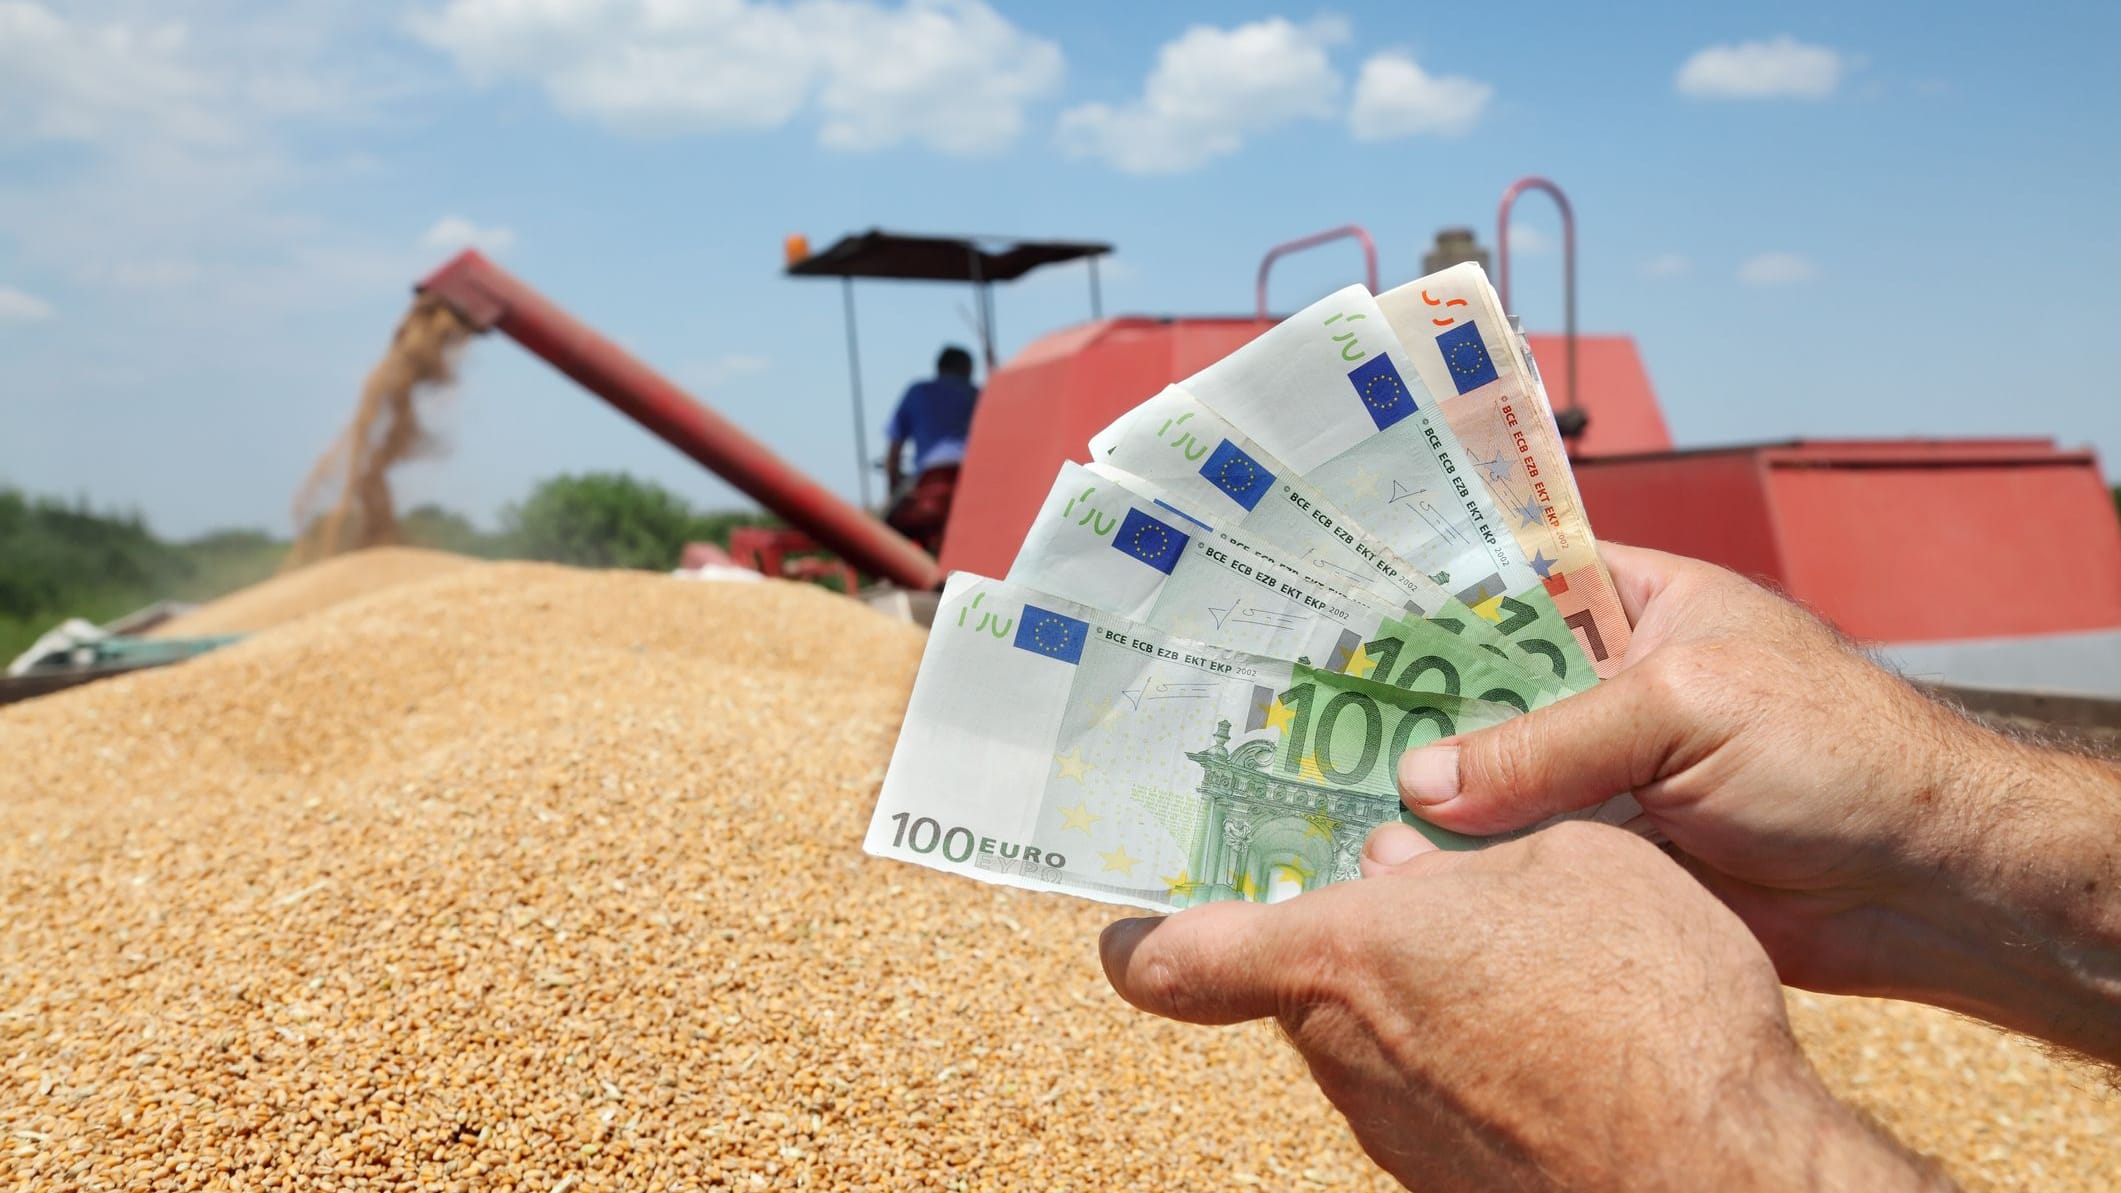 Gehalt: Wie viel Geld verdienen Landwirte?